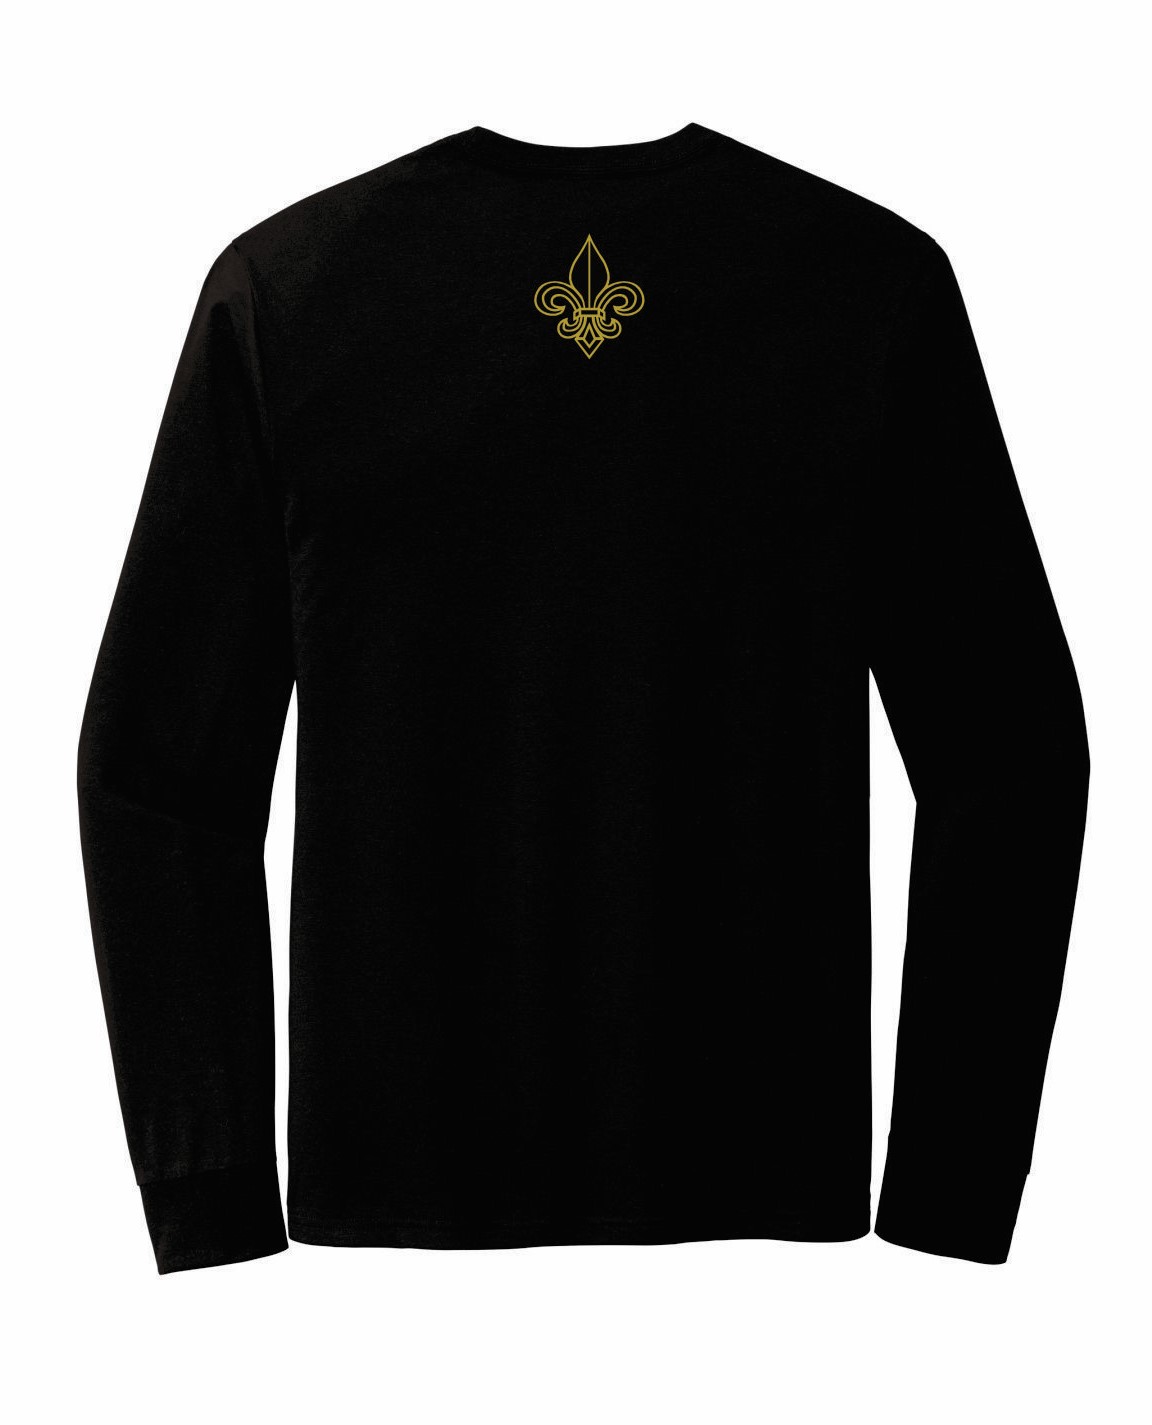 Ochsner Saints Long Sleeve Unisex T-Shirt, Black, large image number 1